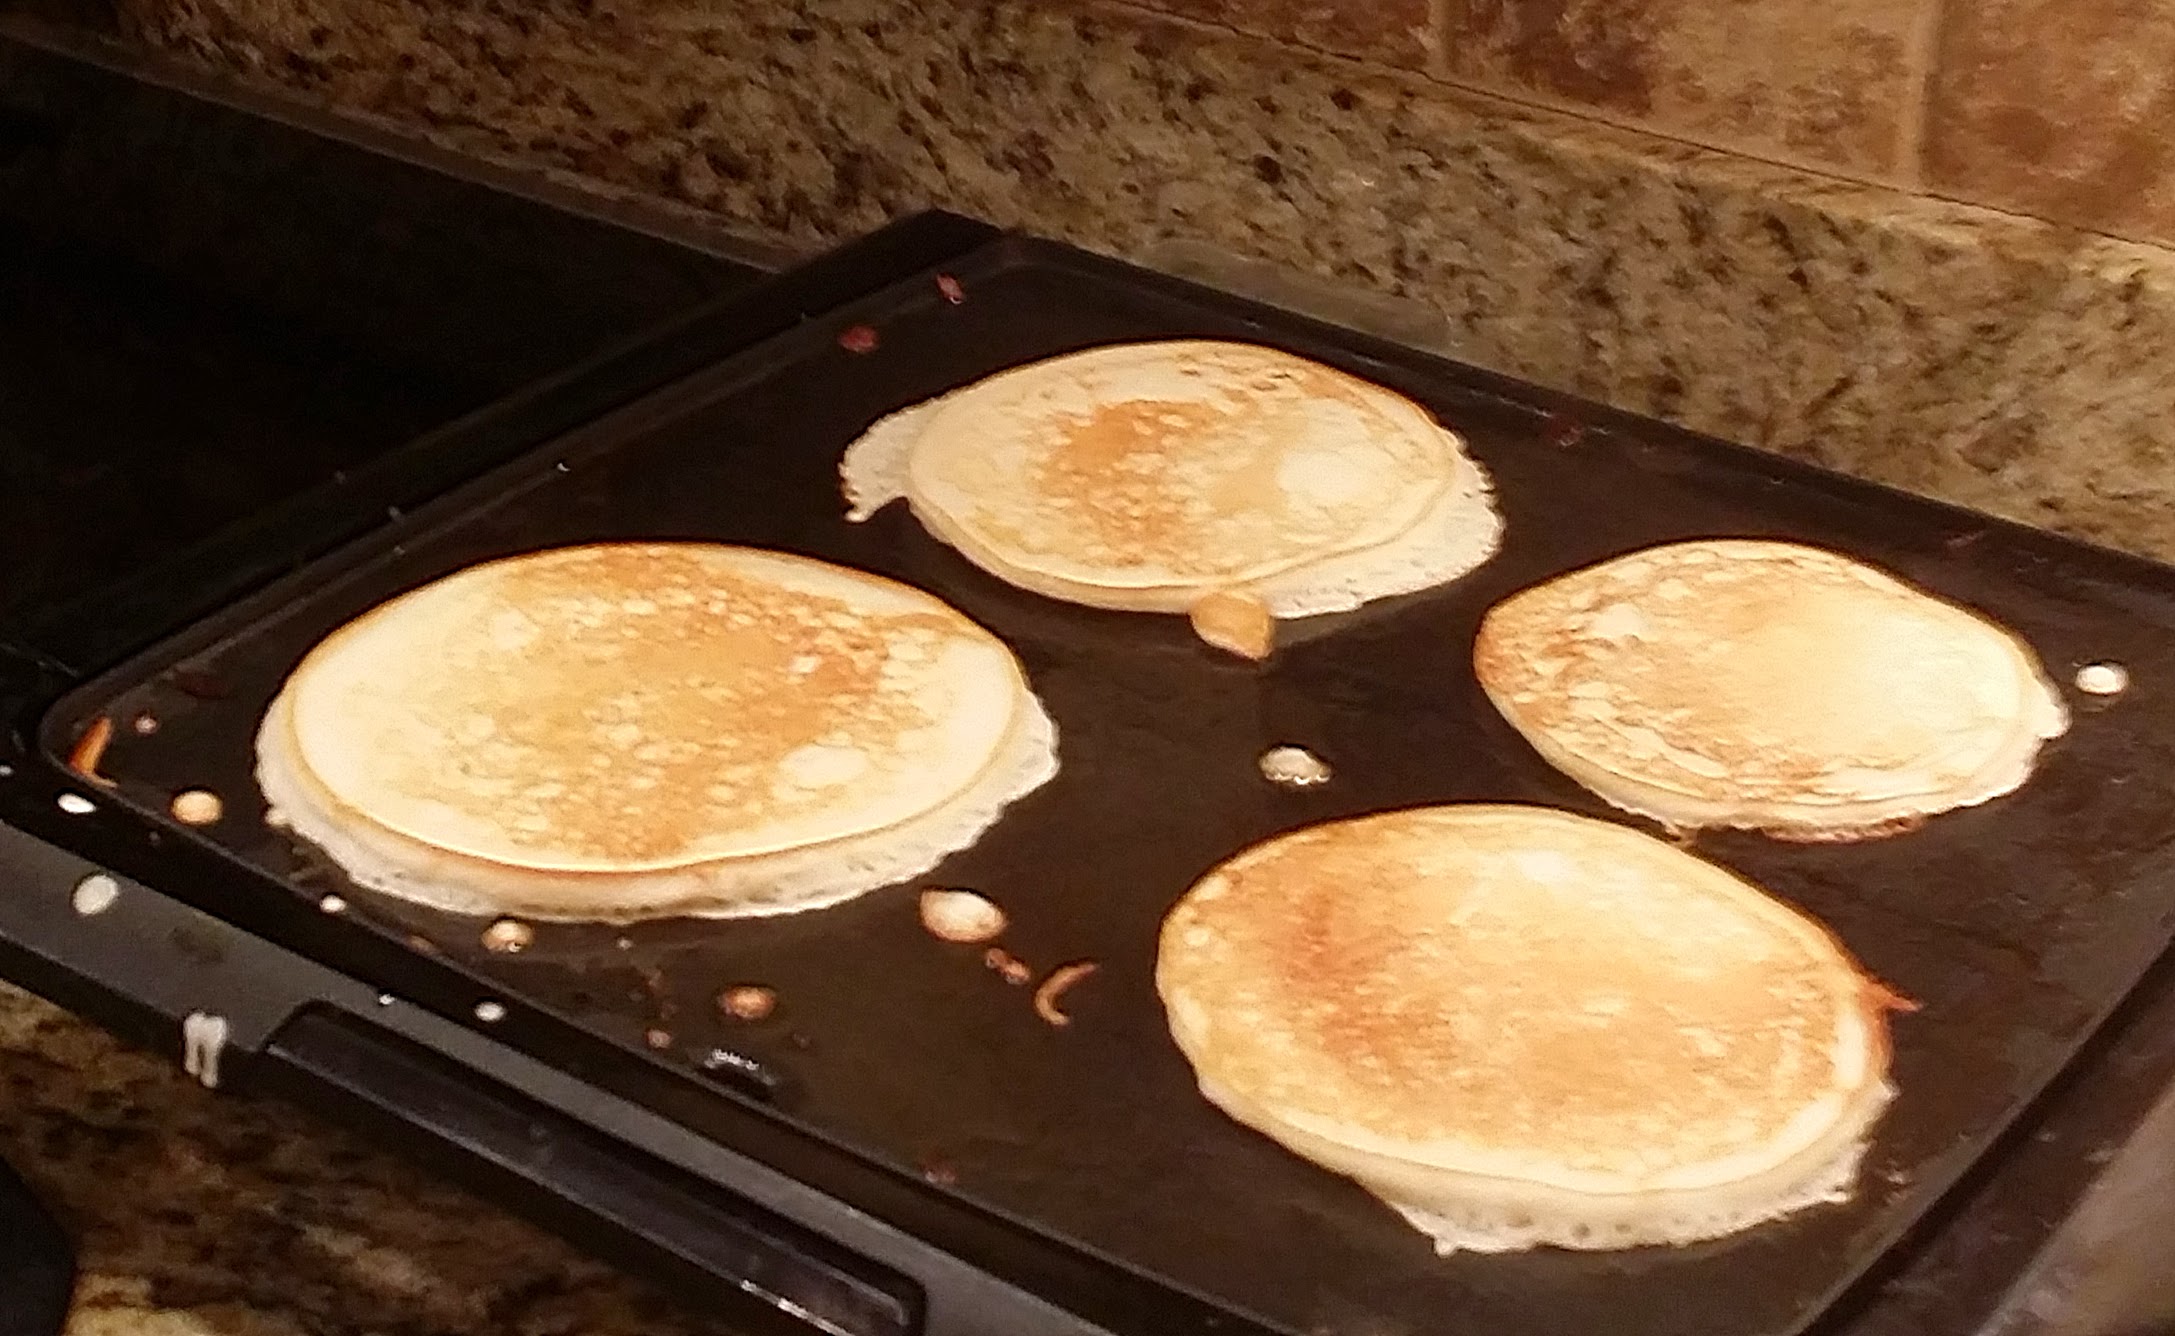 Poppa’s Pancakes